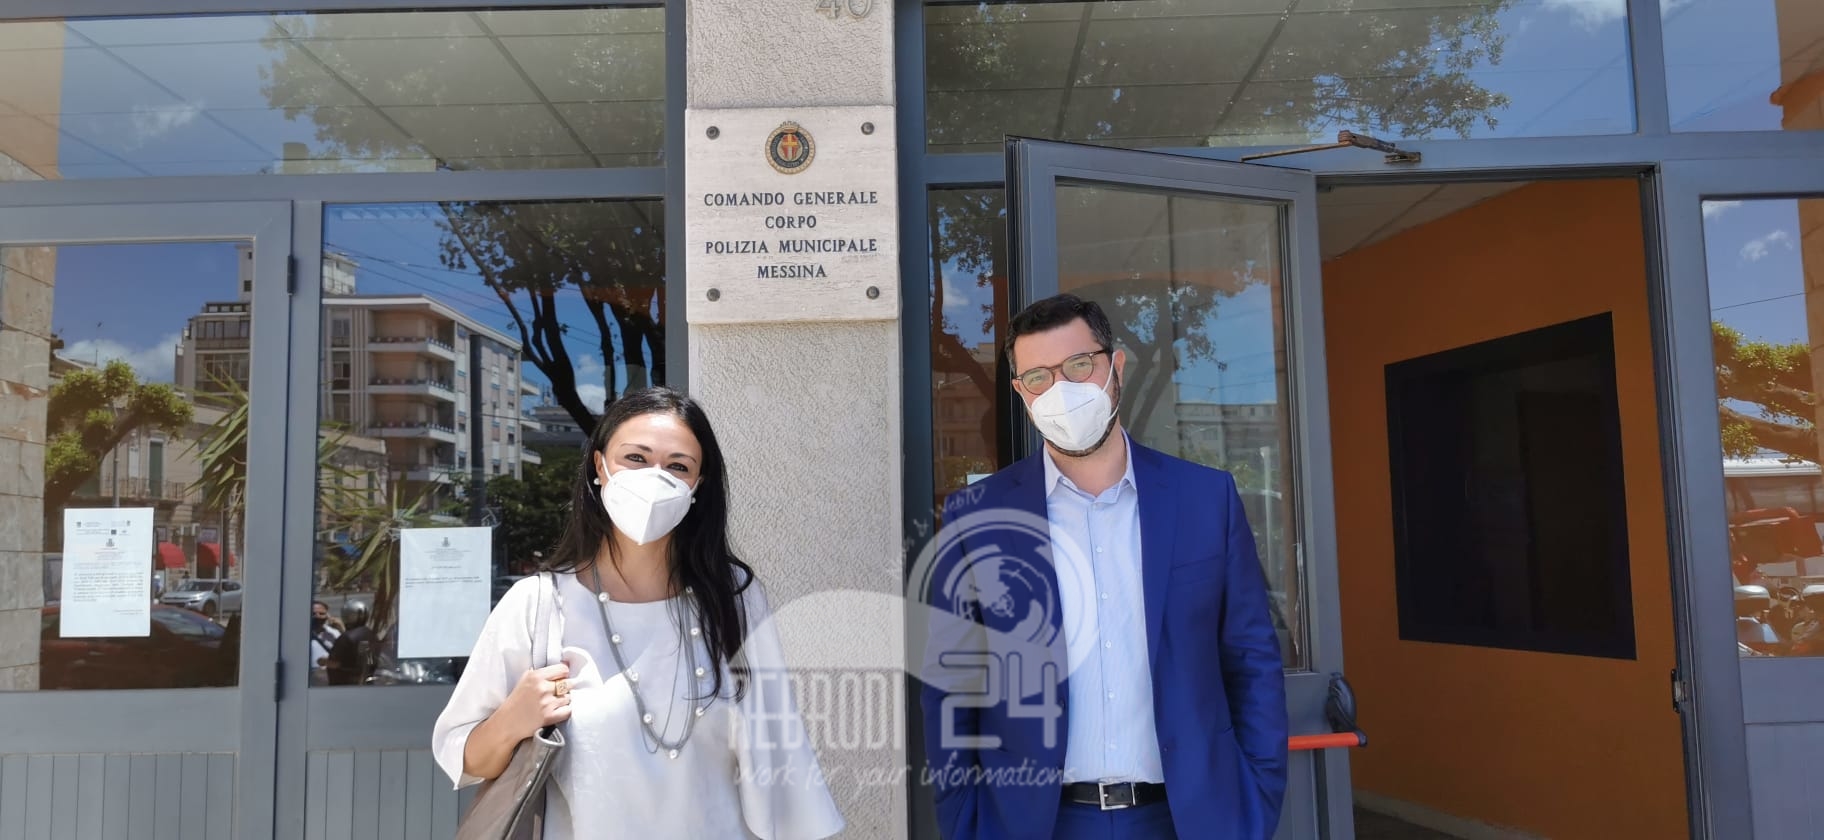 Messina – Il M5S dona 1500 mascherine alla Polizia Municipale